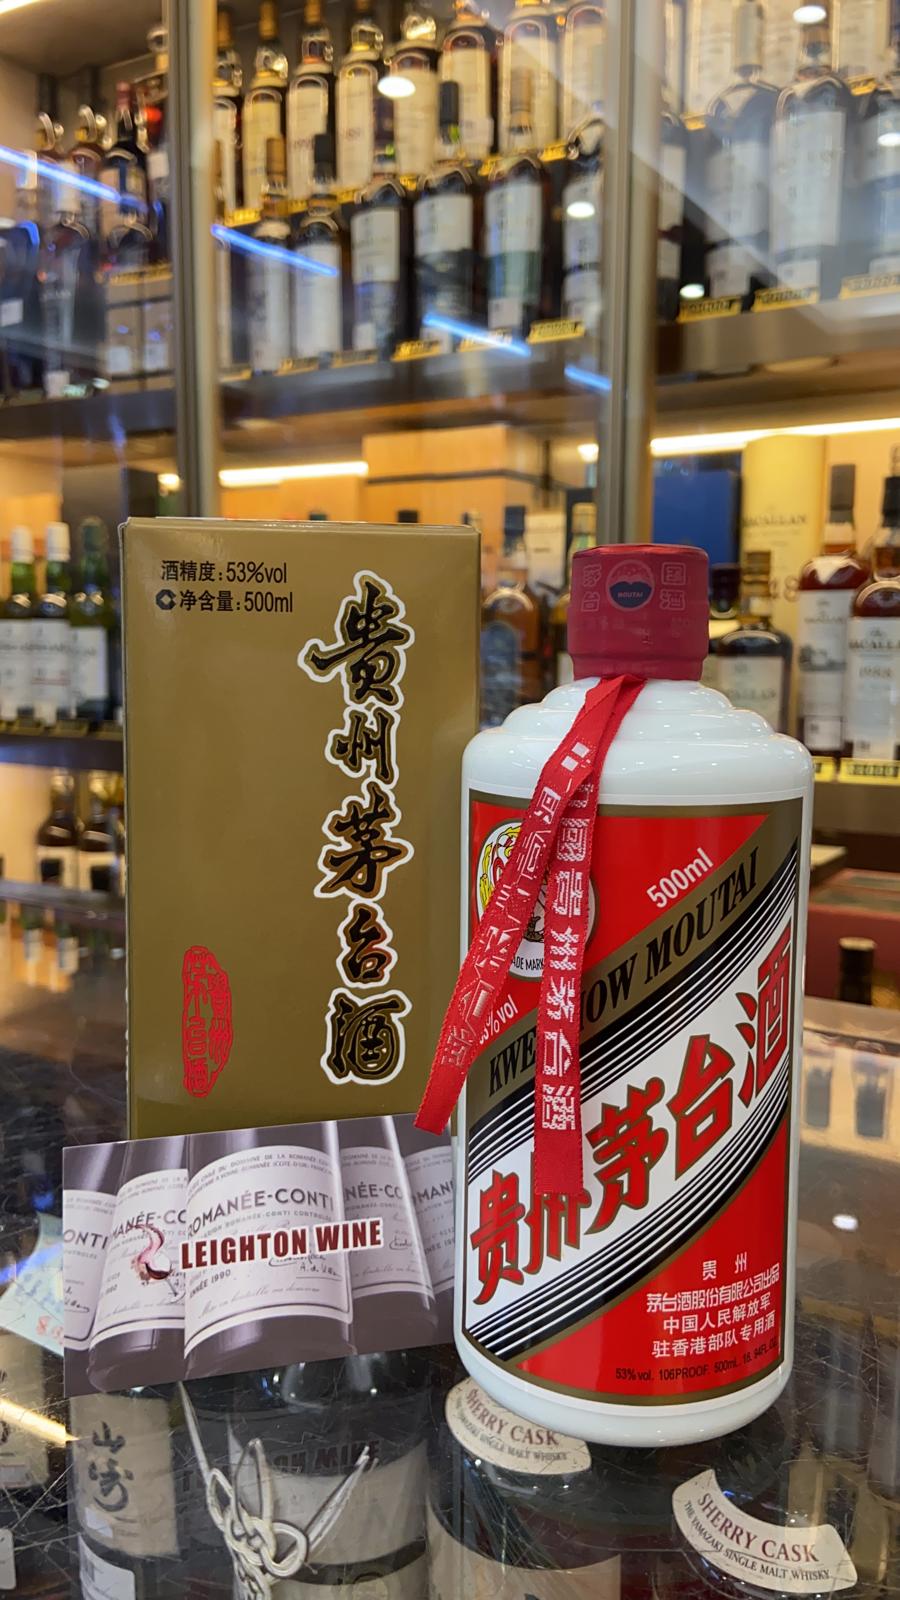 貴州茅台 中國人民解放軍駐香港部對專用茅台酒 2011年 500ml/53%